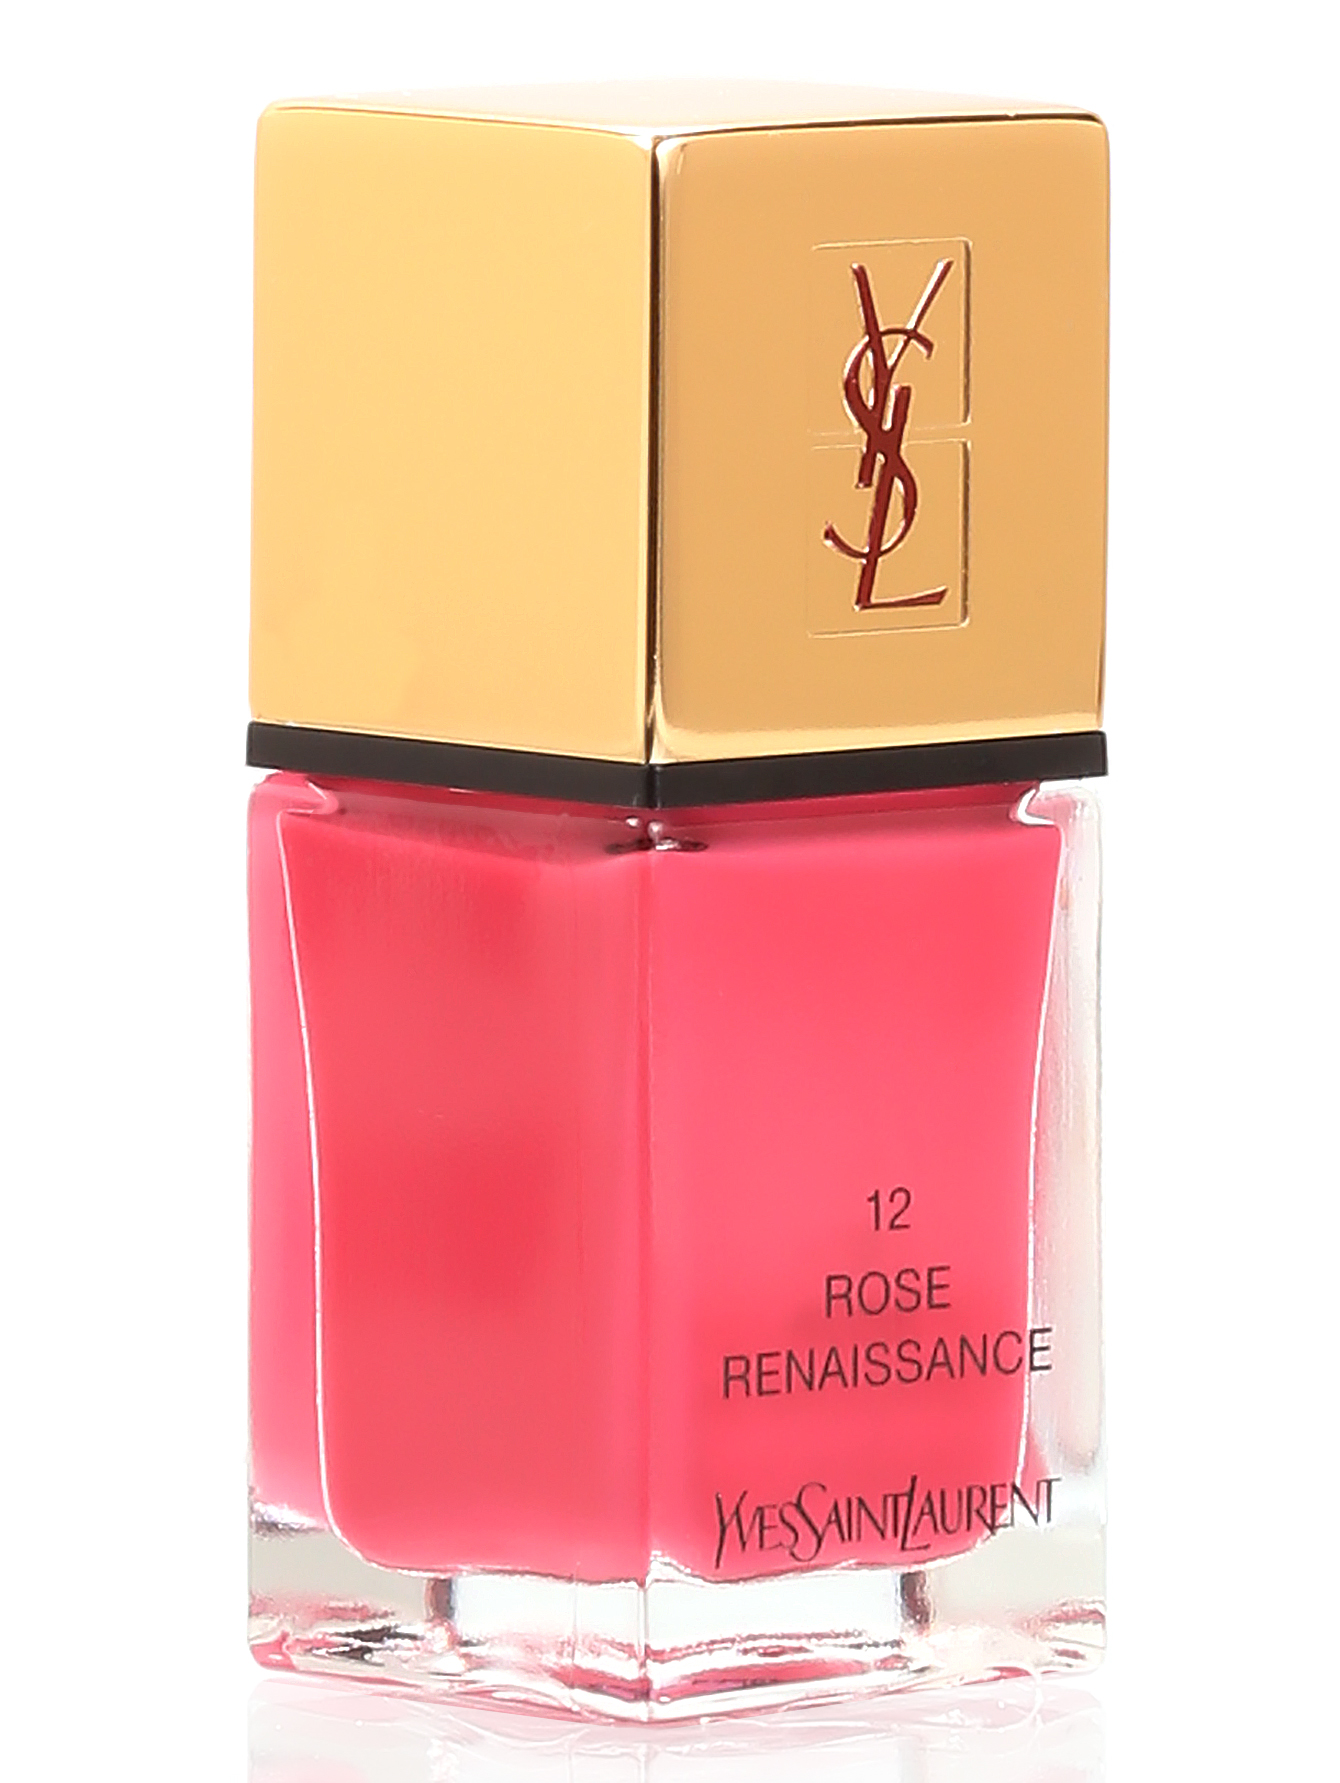 Лак для ногтей - №12 Rose renaissance, La Laque Couture, 10ml - Общий вид